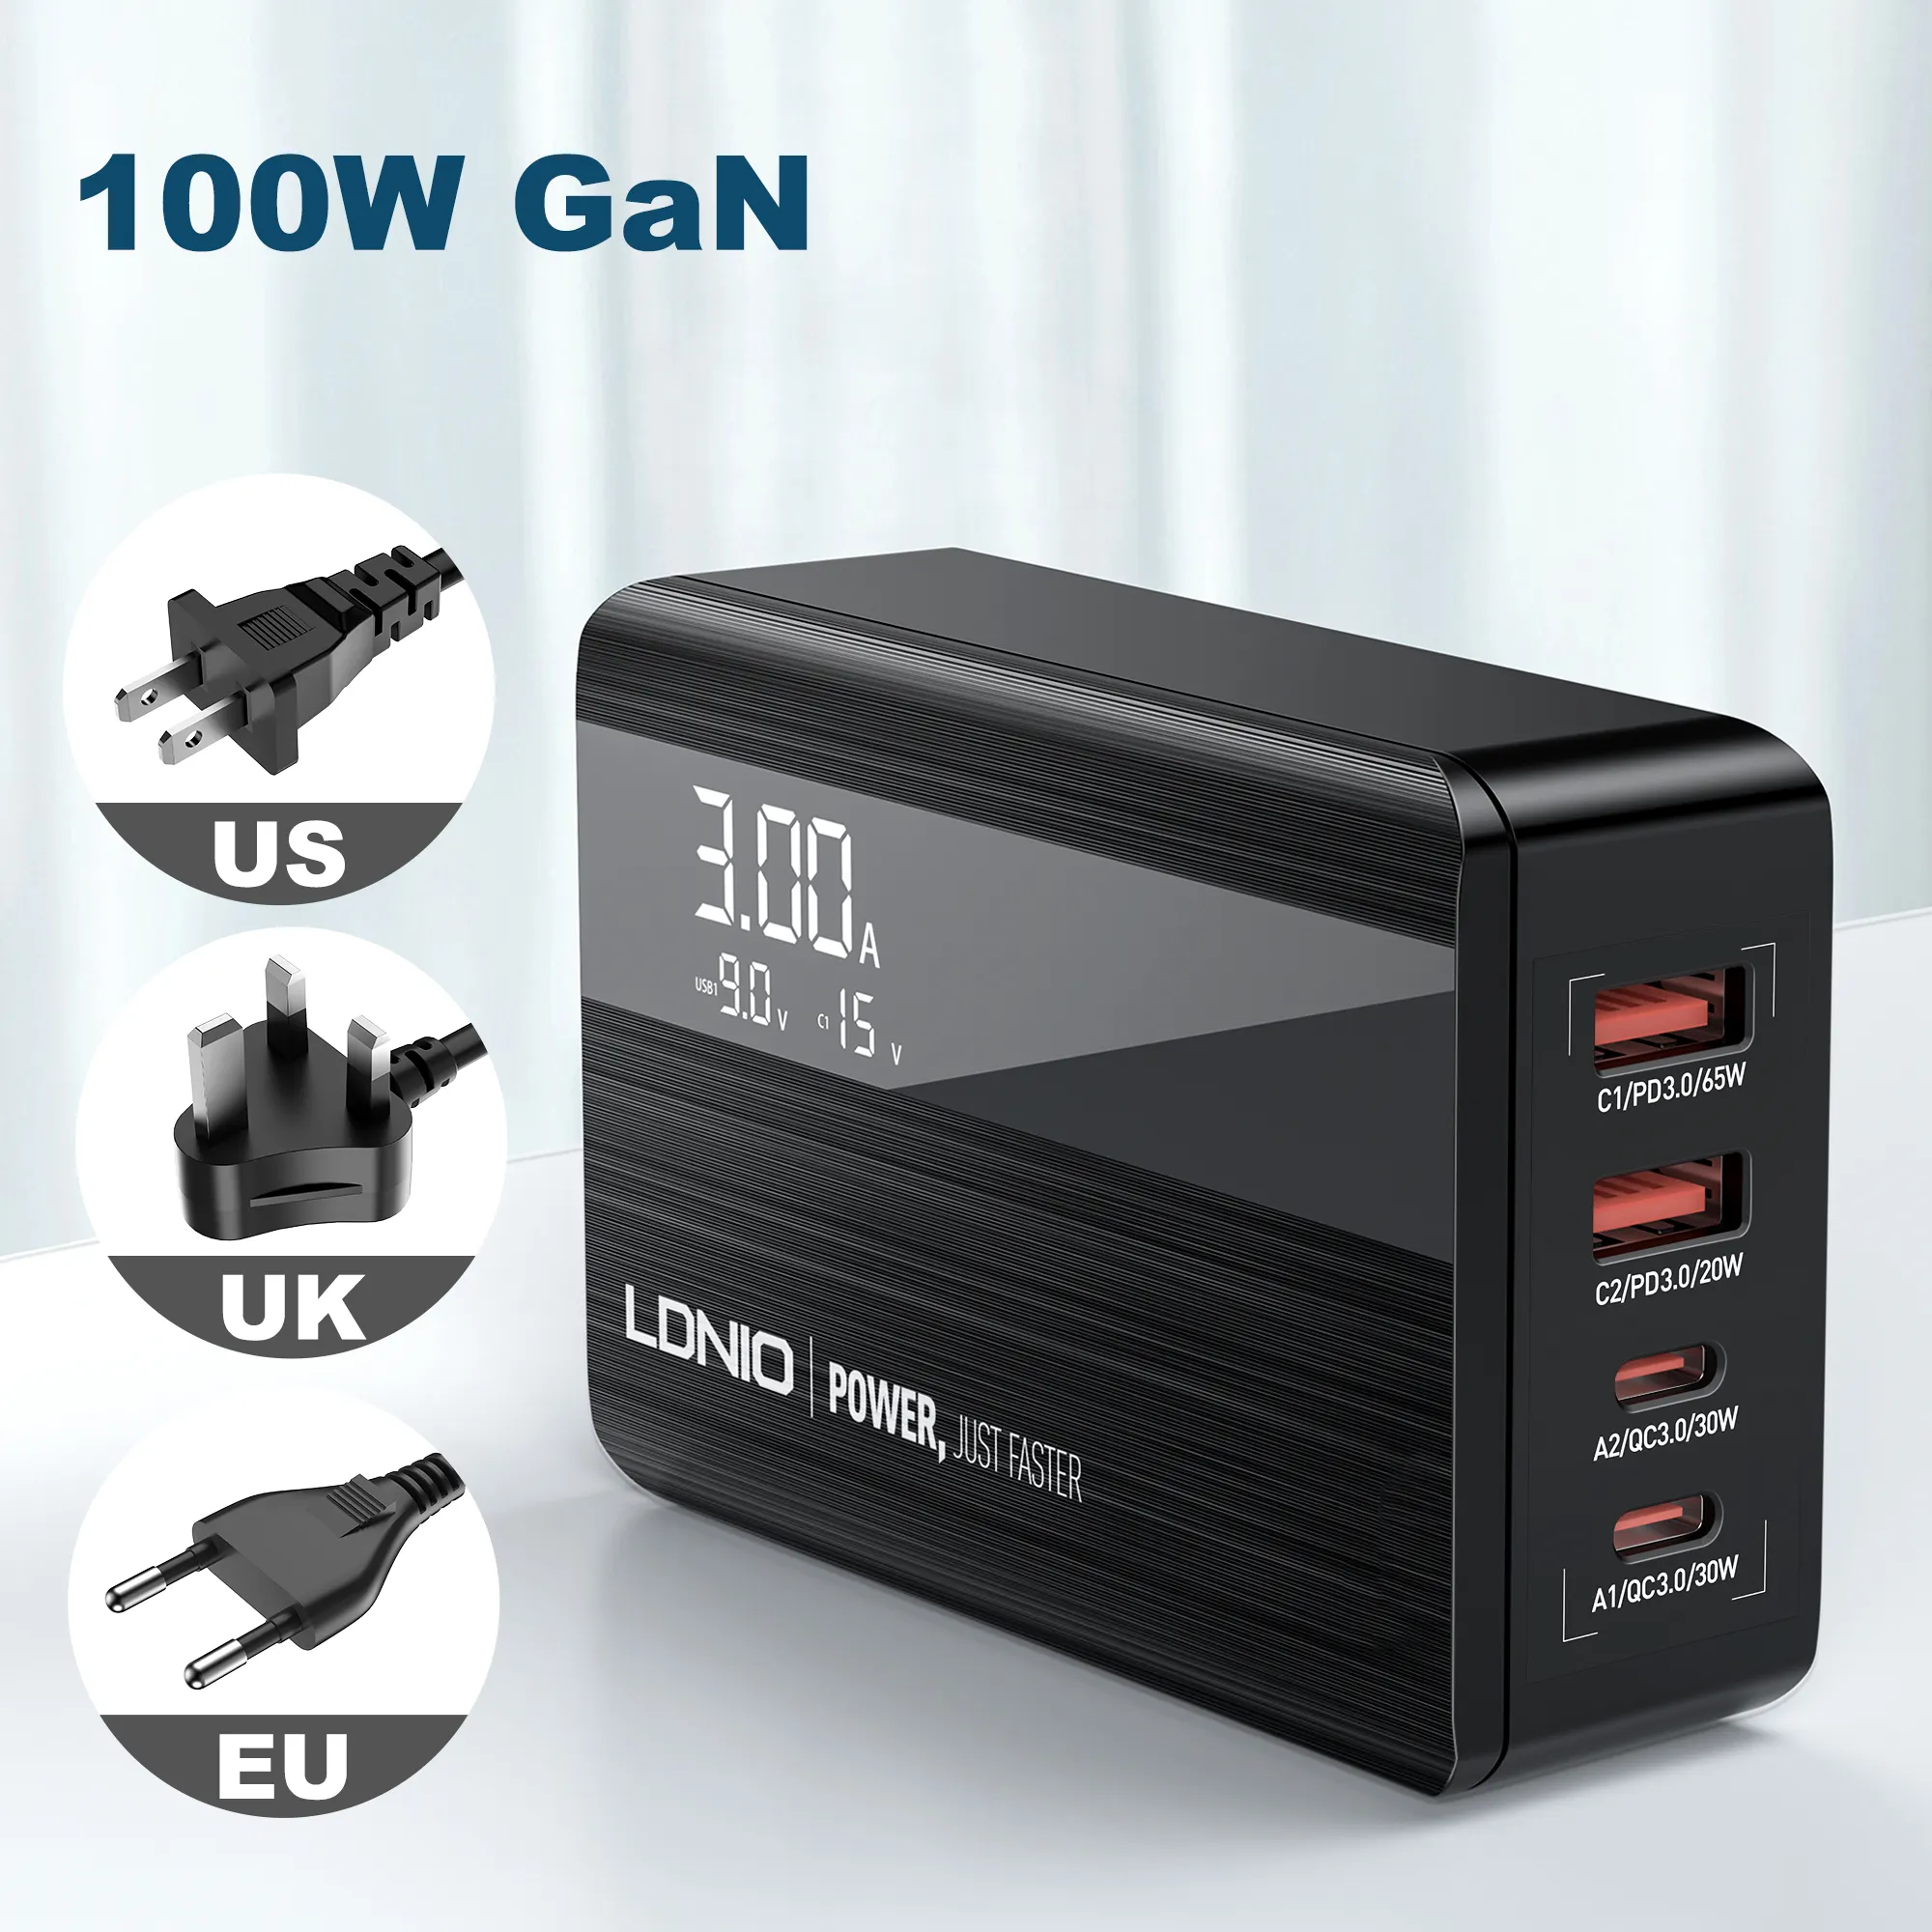 LDNIO A4809C produit le plus vendu sur Alibaba QC3.0 PD 4 USB Gan chargeur de téléphone pour ordinateur portable Macbook 100W Gan chargeur d'alimentation